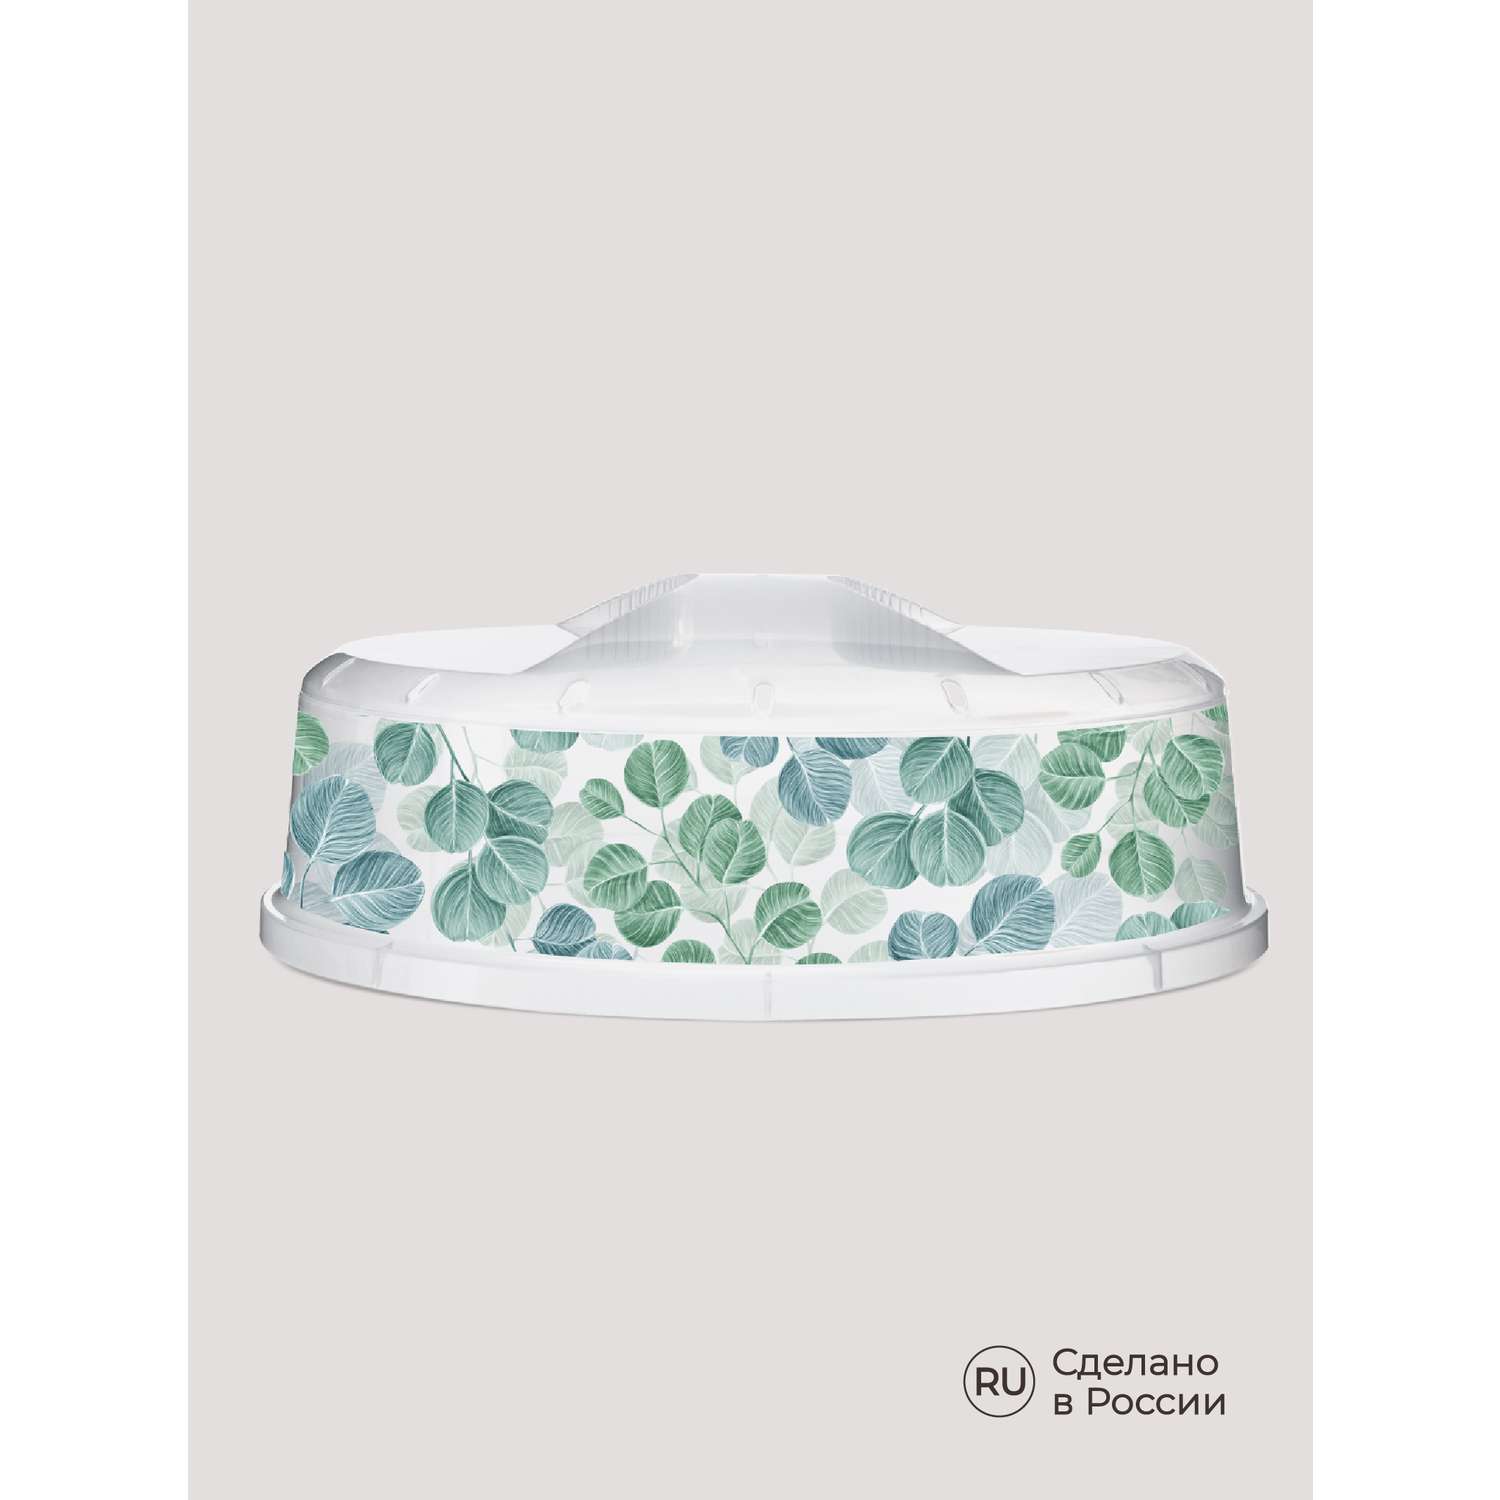 Крышка Phibo для холодильника и микроволновой печи с декором диаметр 240 мм бесцветный - фото 7